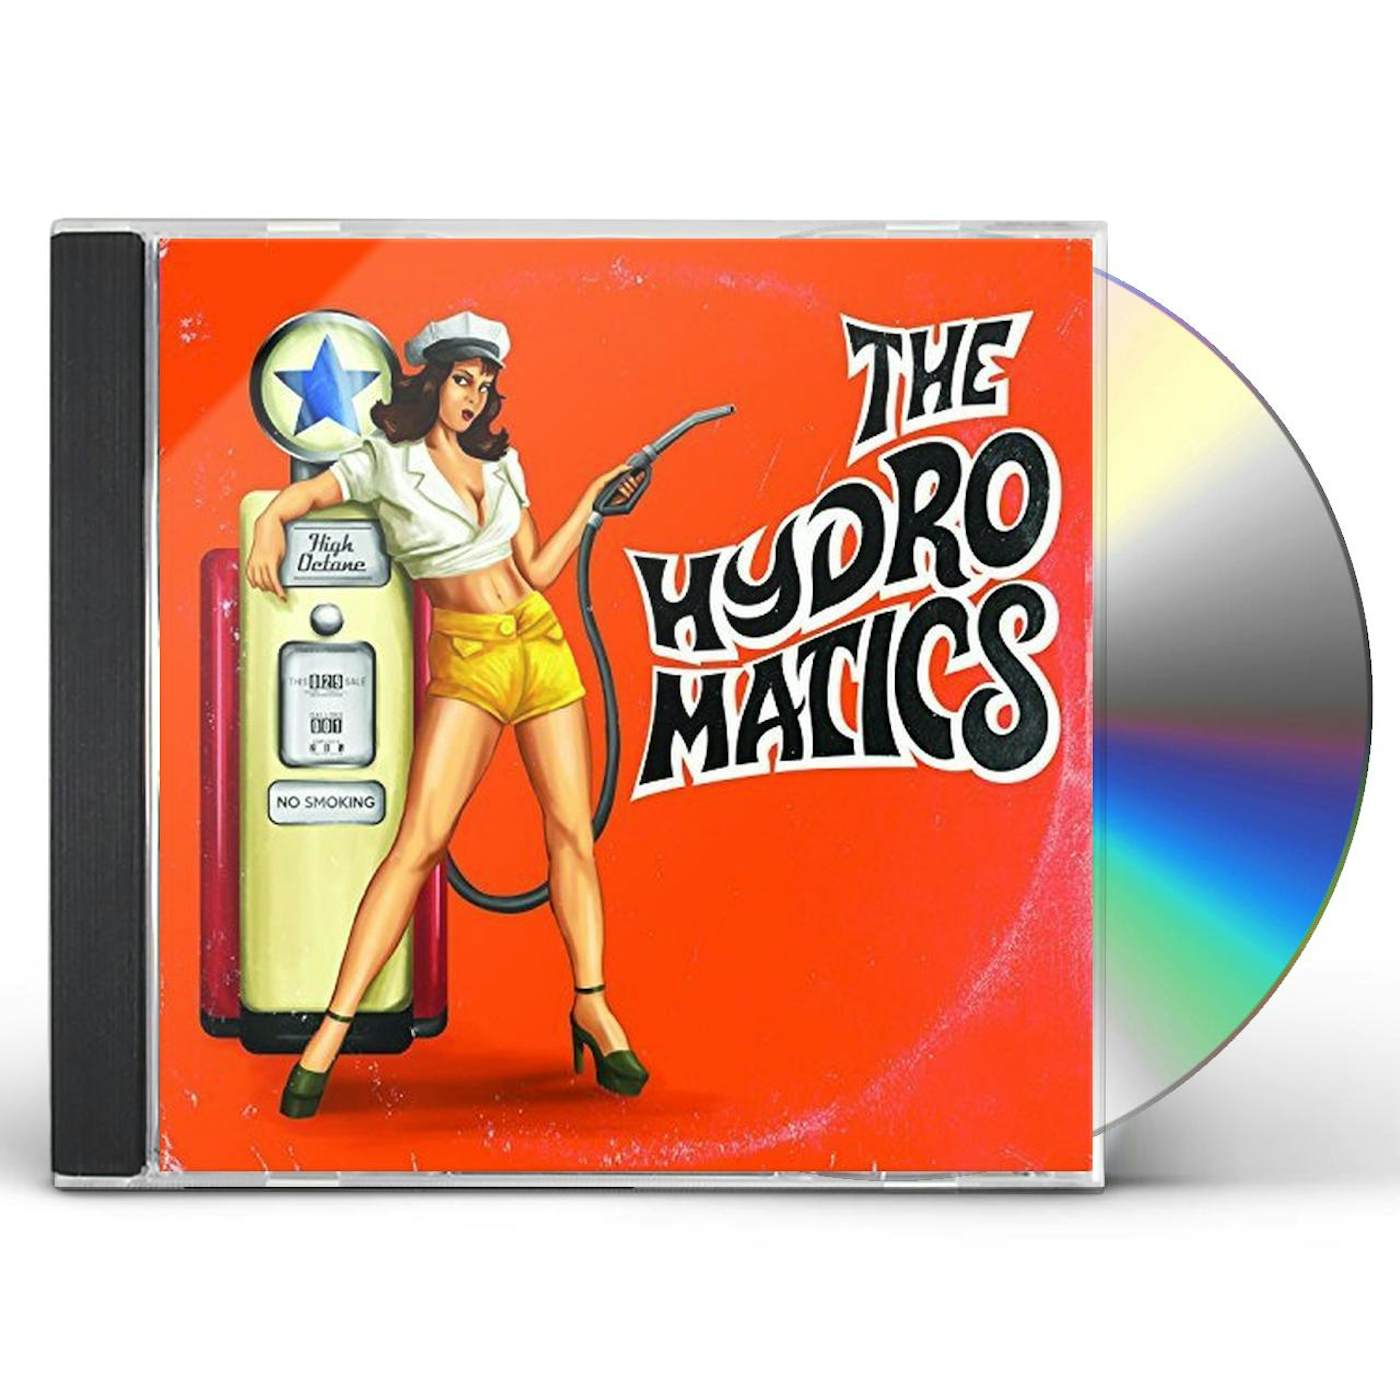 The Hydromatics CD